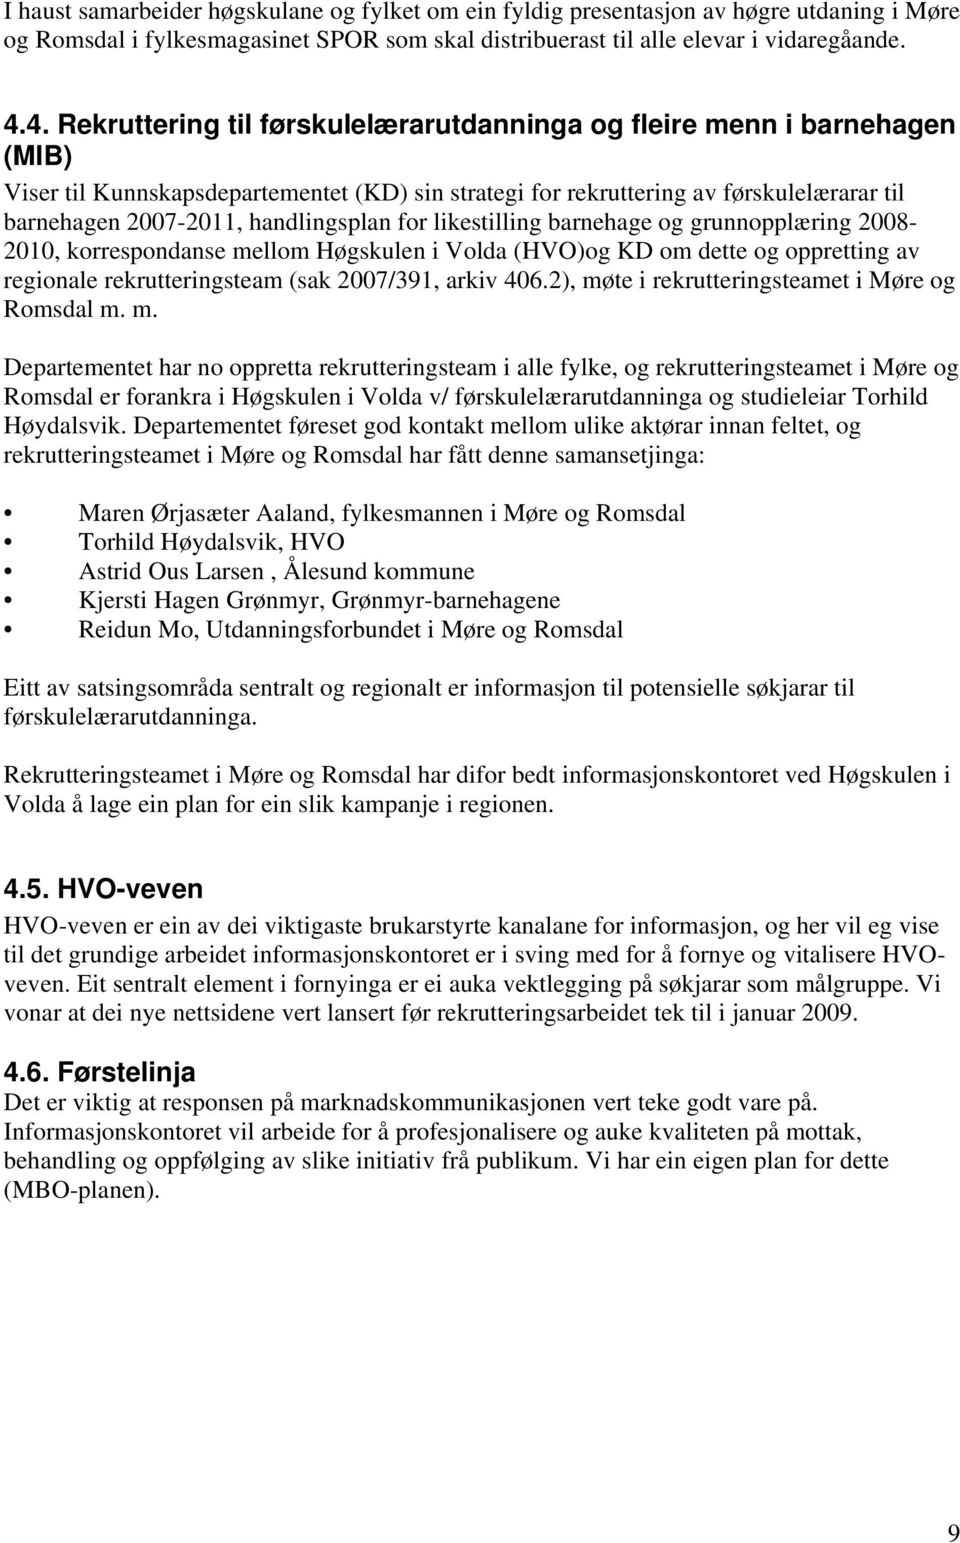 handlingsplan for likestilling barnehage og grunnopplæring 2008-2010, korrespondanse mellom Høgskulen i Volda (HVO)og KD om dette og oppretting av regionale rekrutteringsteam (sak 2007/391, arkiv 406.